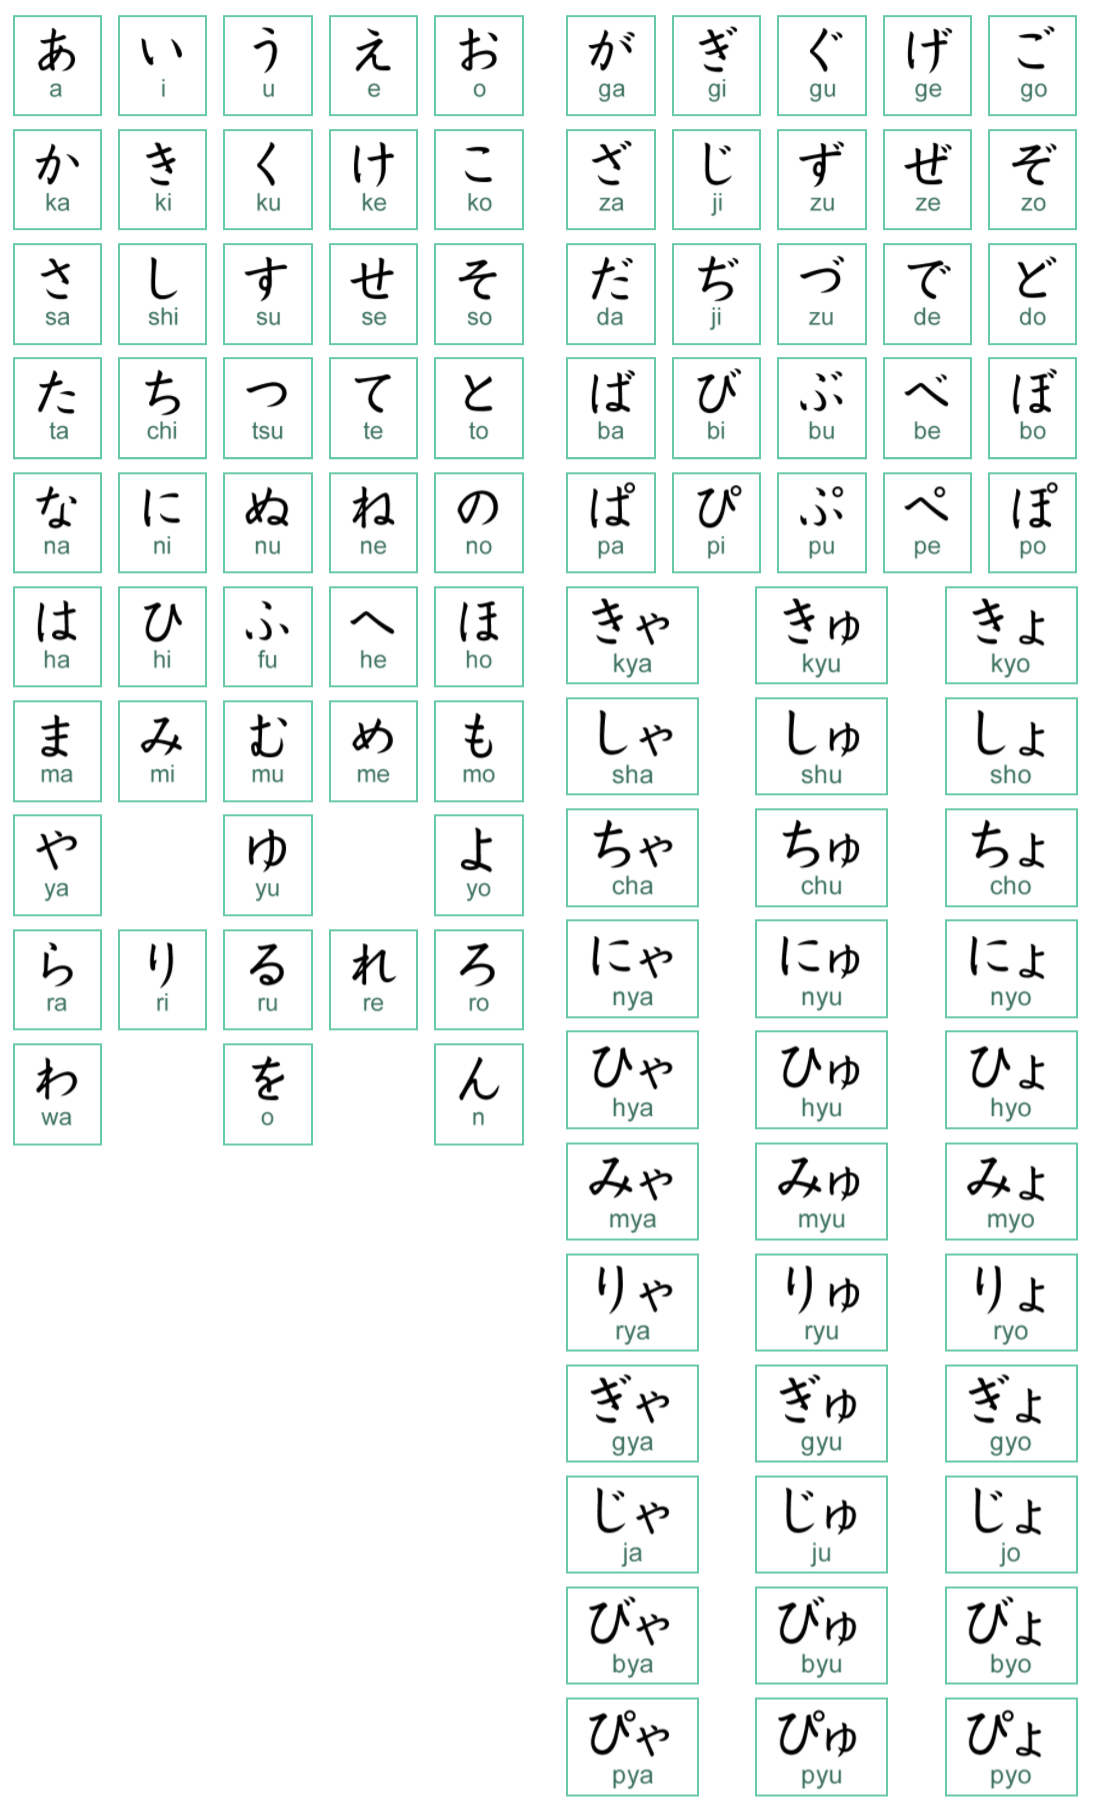 Bảng chữ cái Katakana Nhật đơn giản đẹp